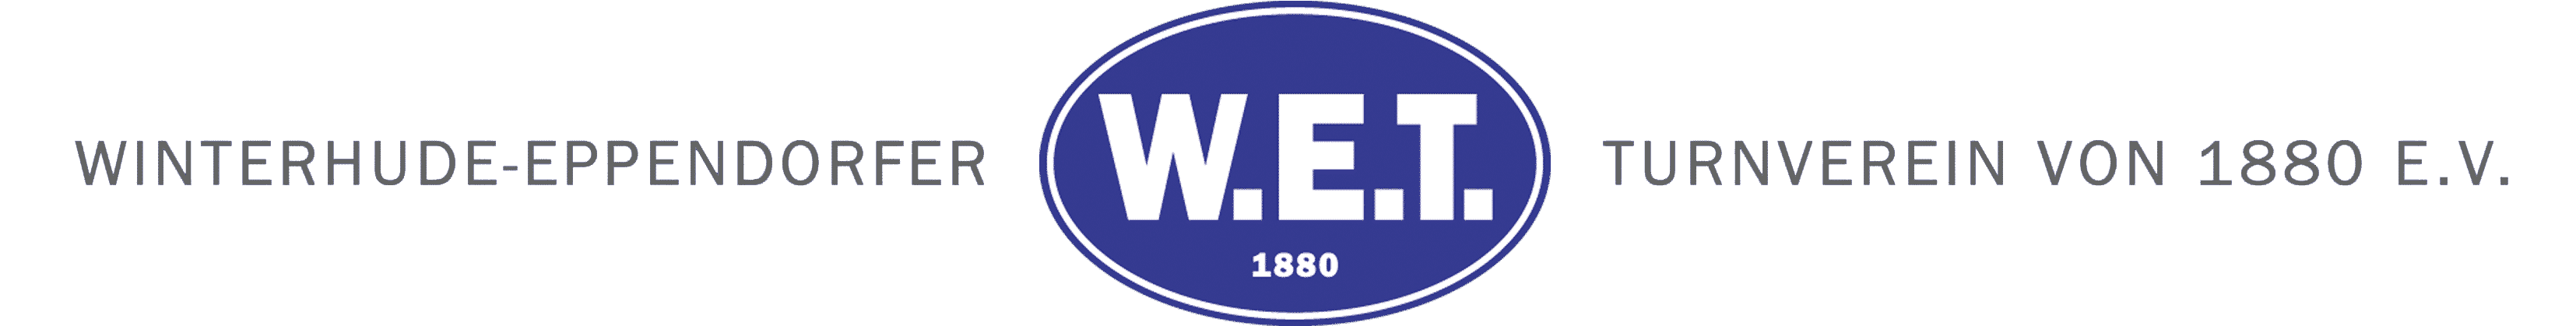 W.E.T.